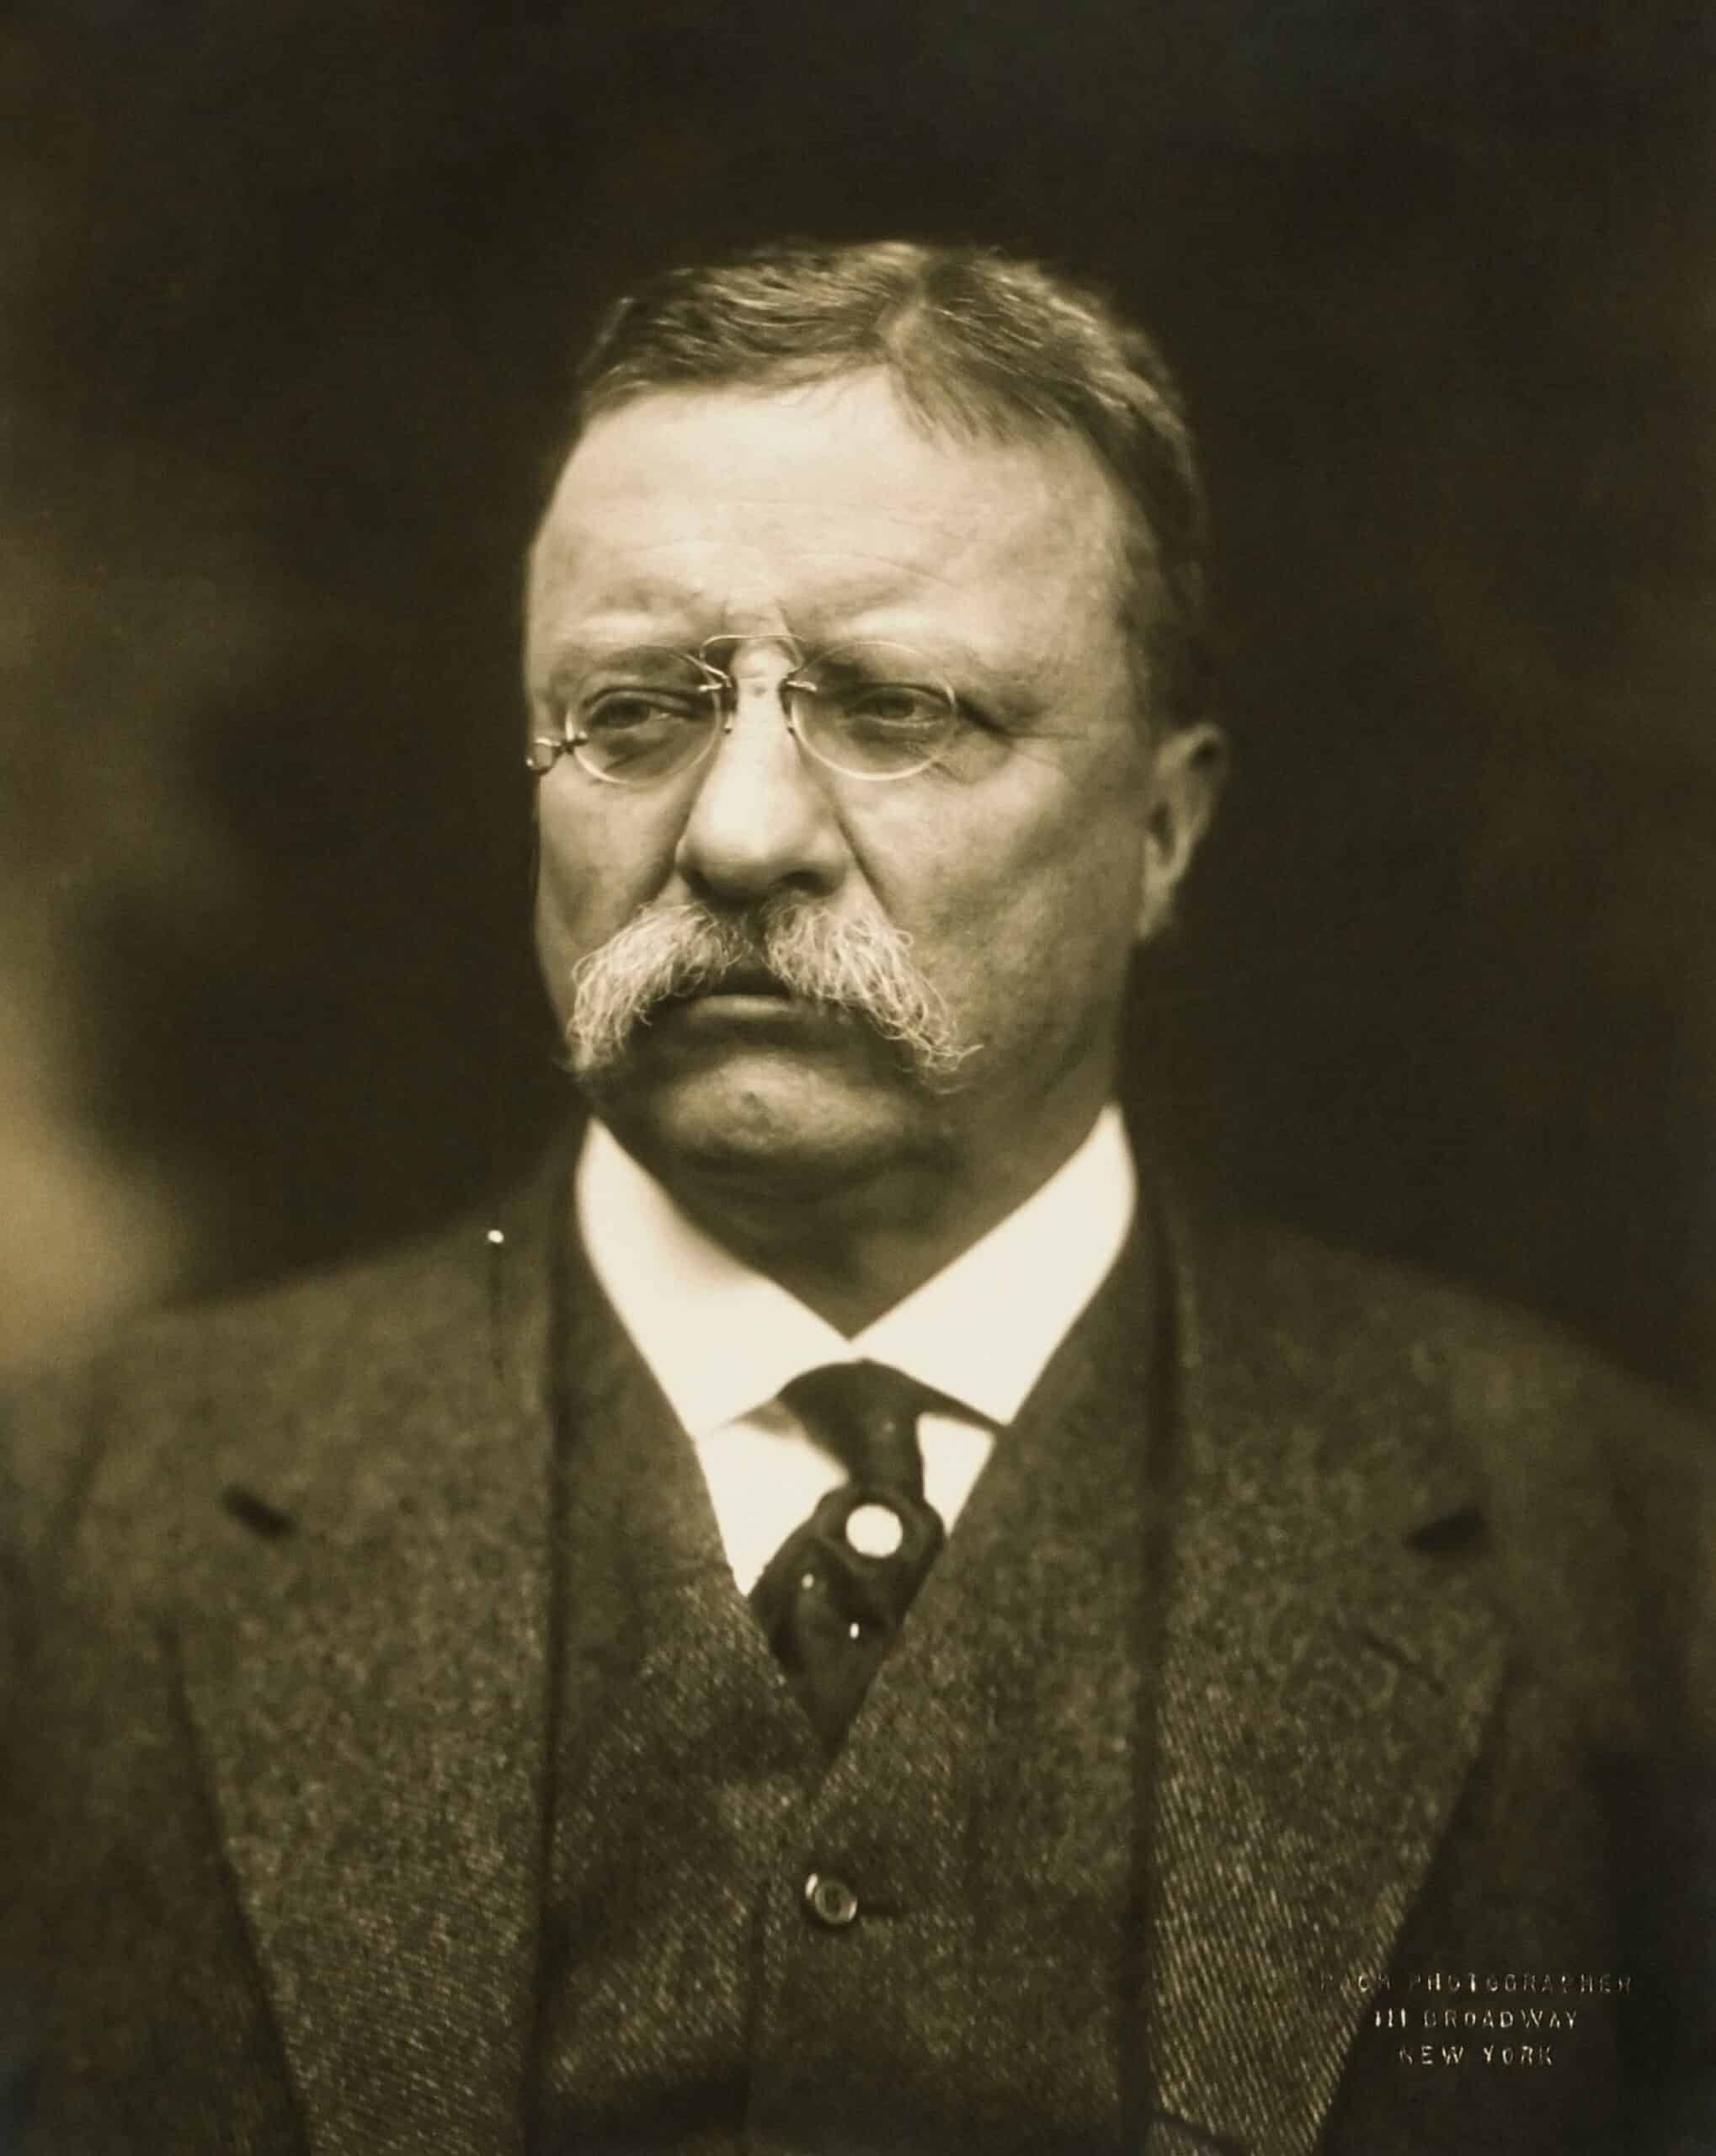 Yhdysvaltain presidentti Theodore Roosevelt nenälaseineen